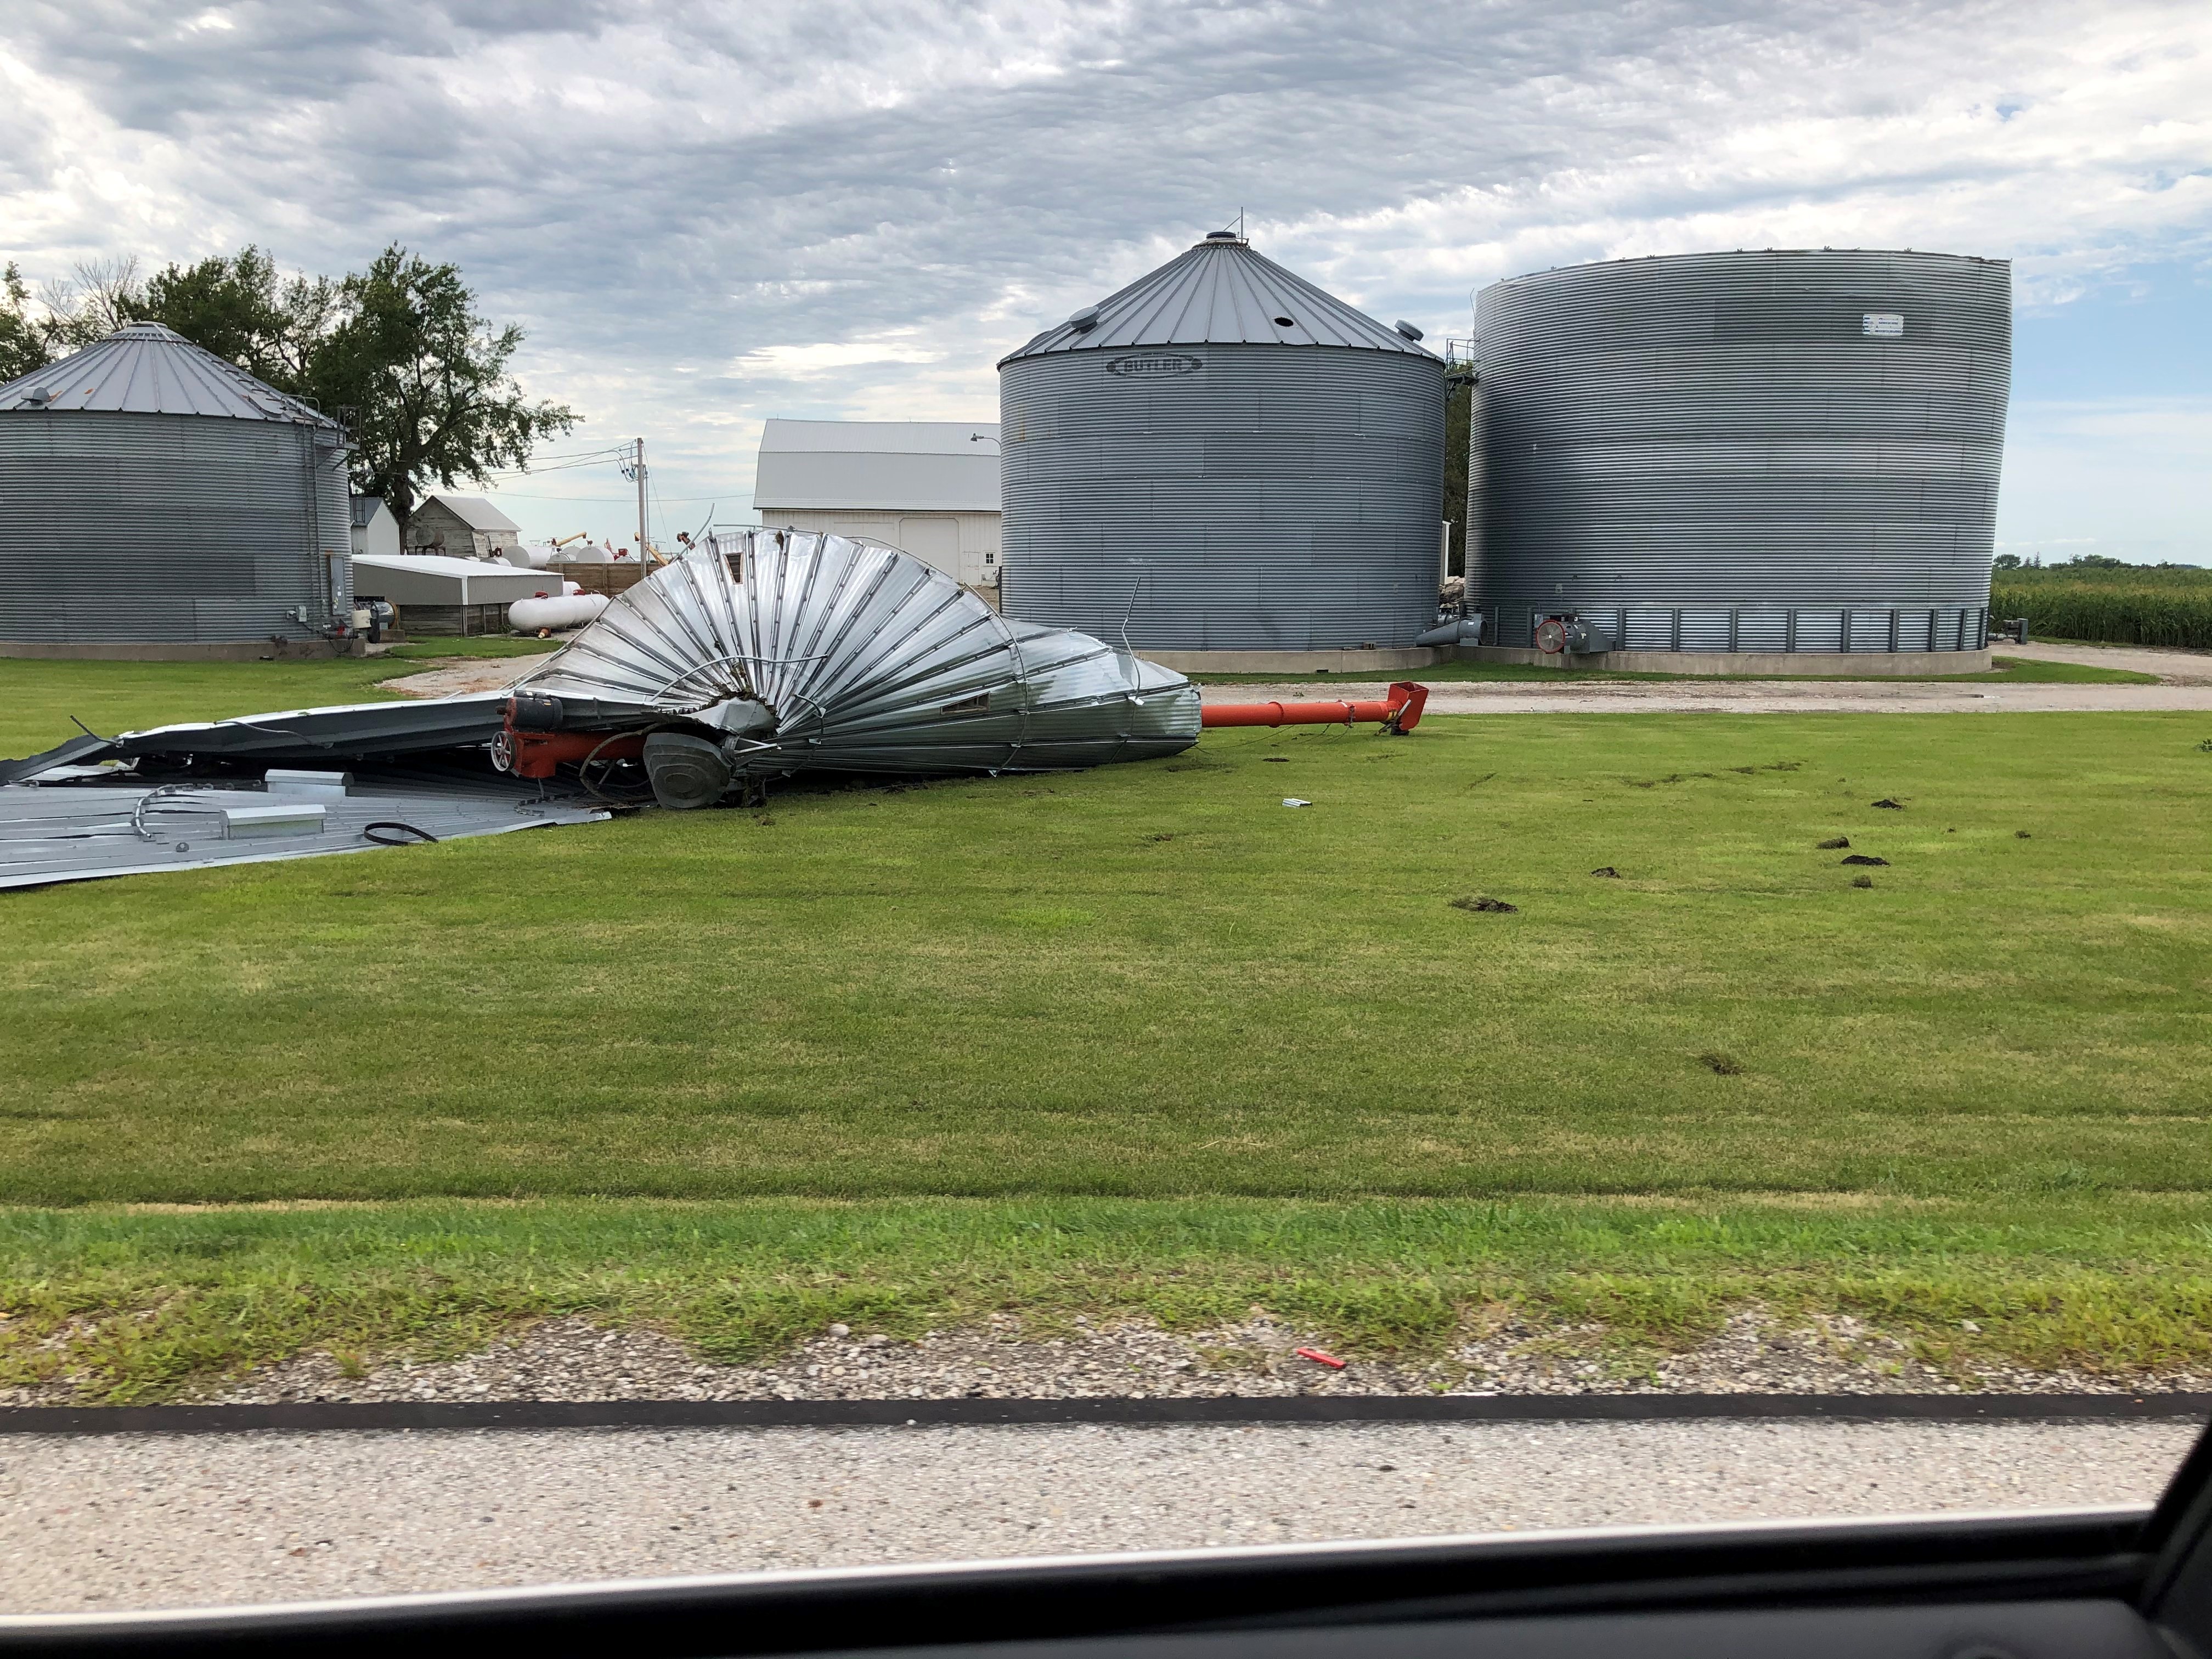 A damaged grain bin in central Iowa damaged by the derecho